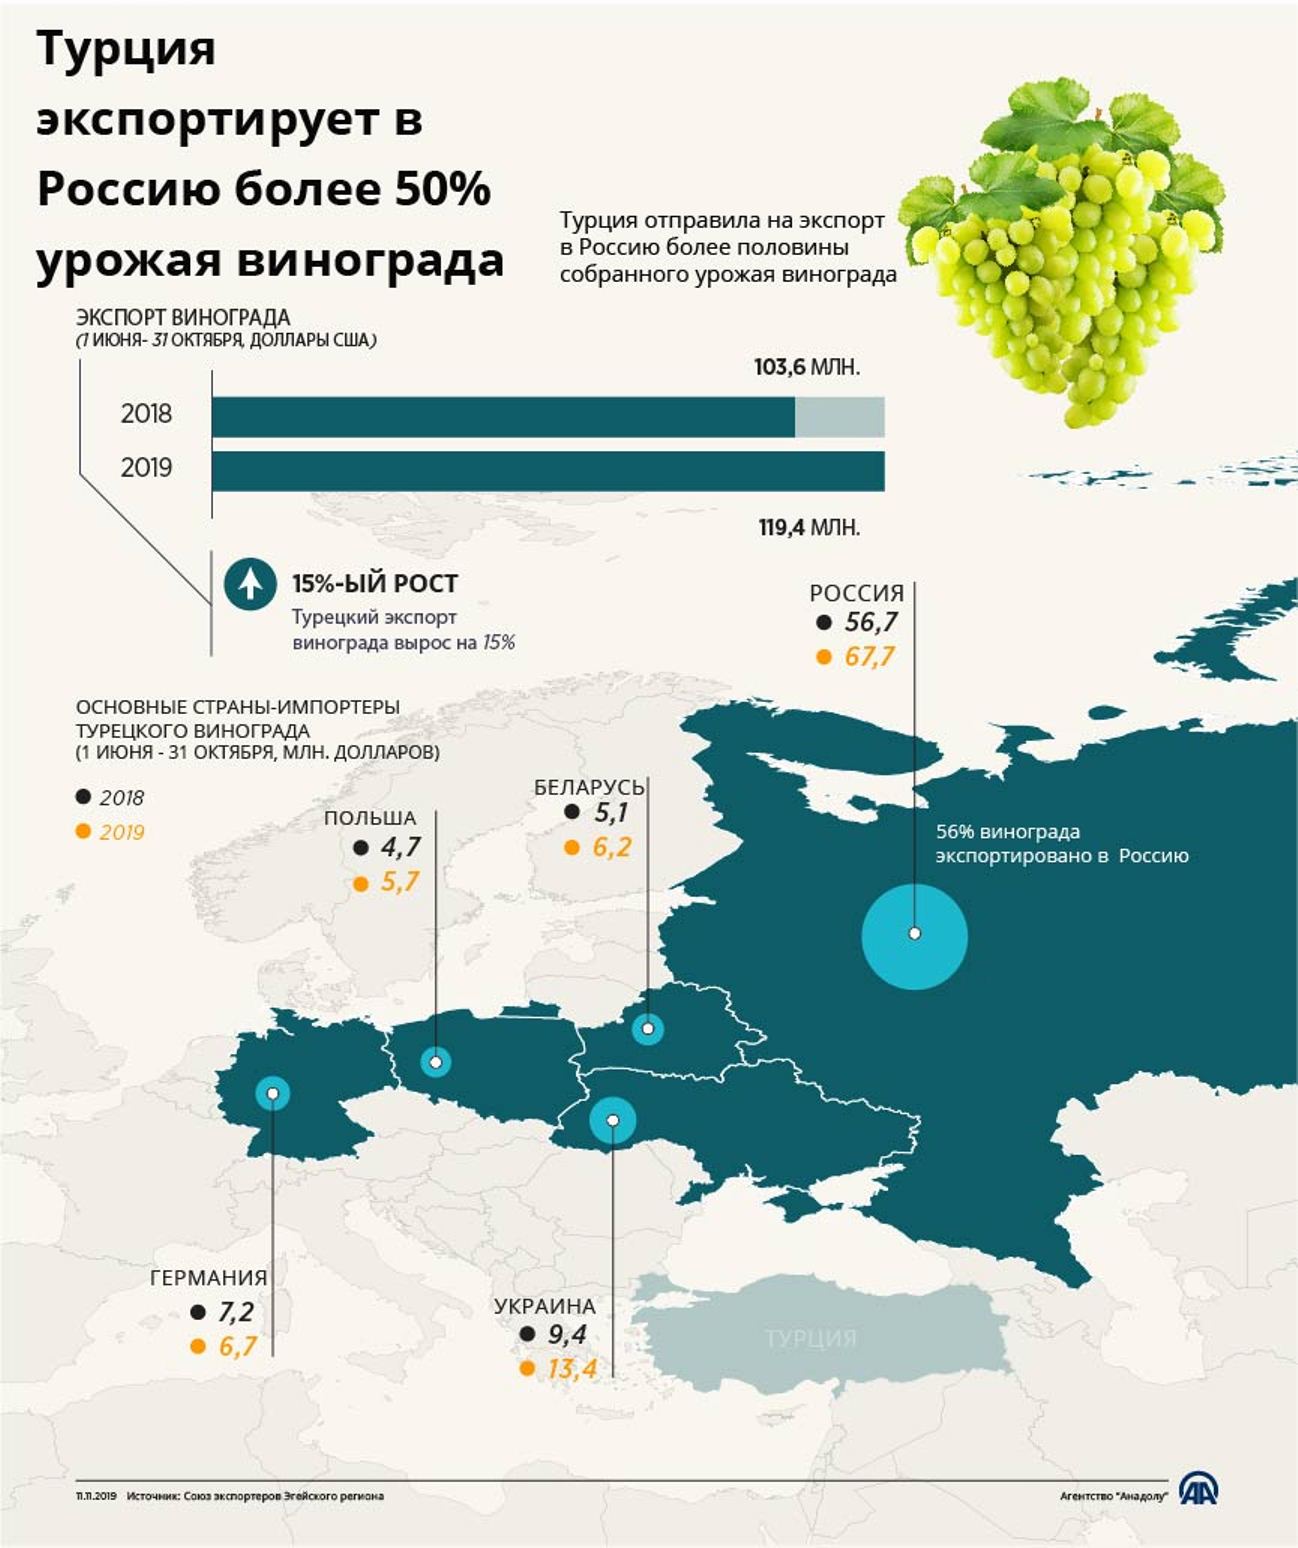 Турция экспортирует в Россию более 50% урожая винограда